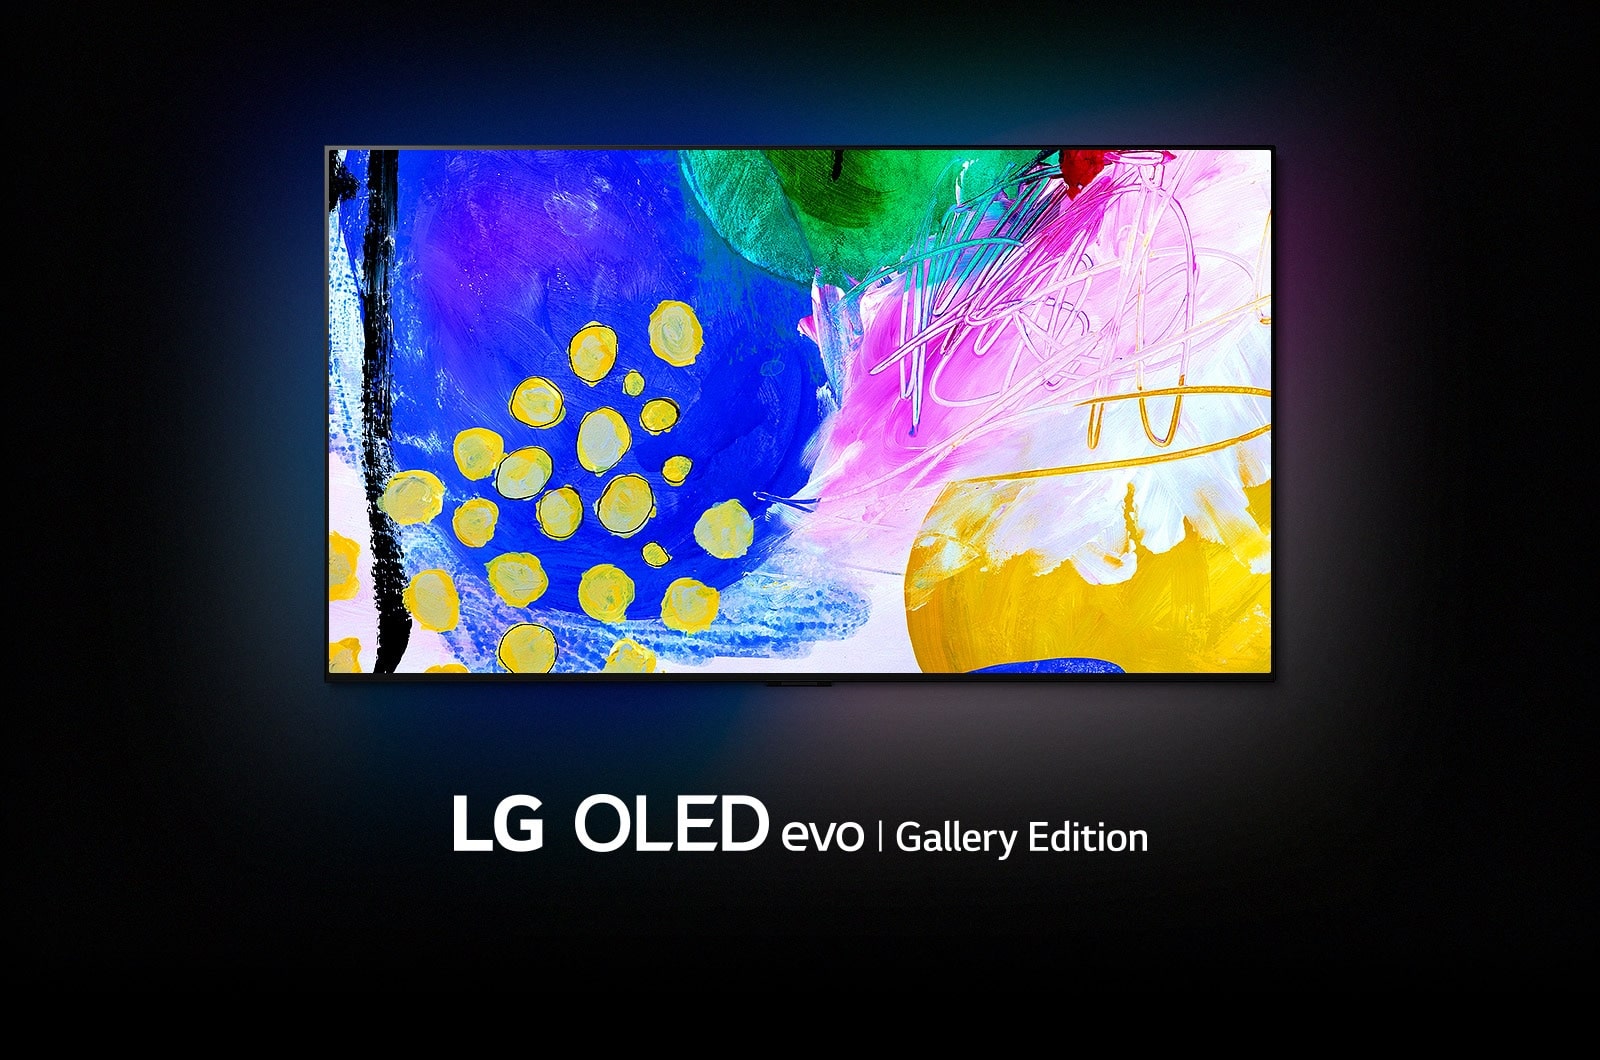 LG 77 Inch OLED G2 evo TV